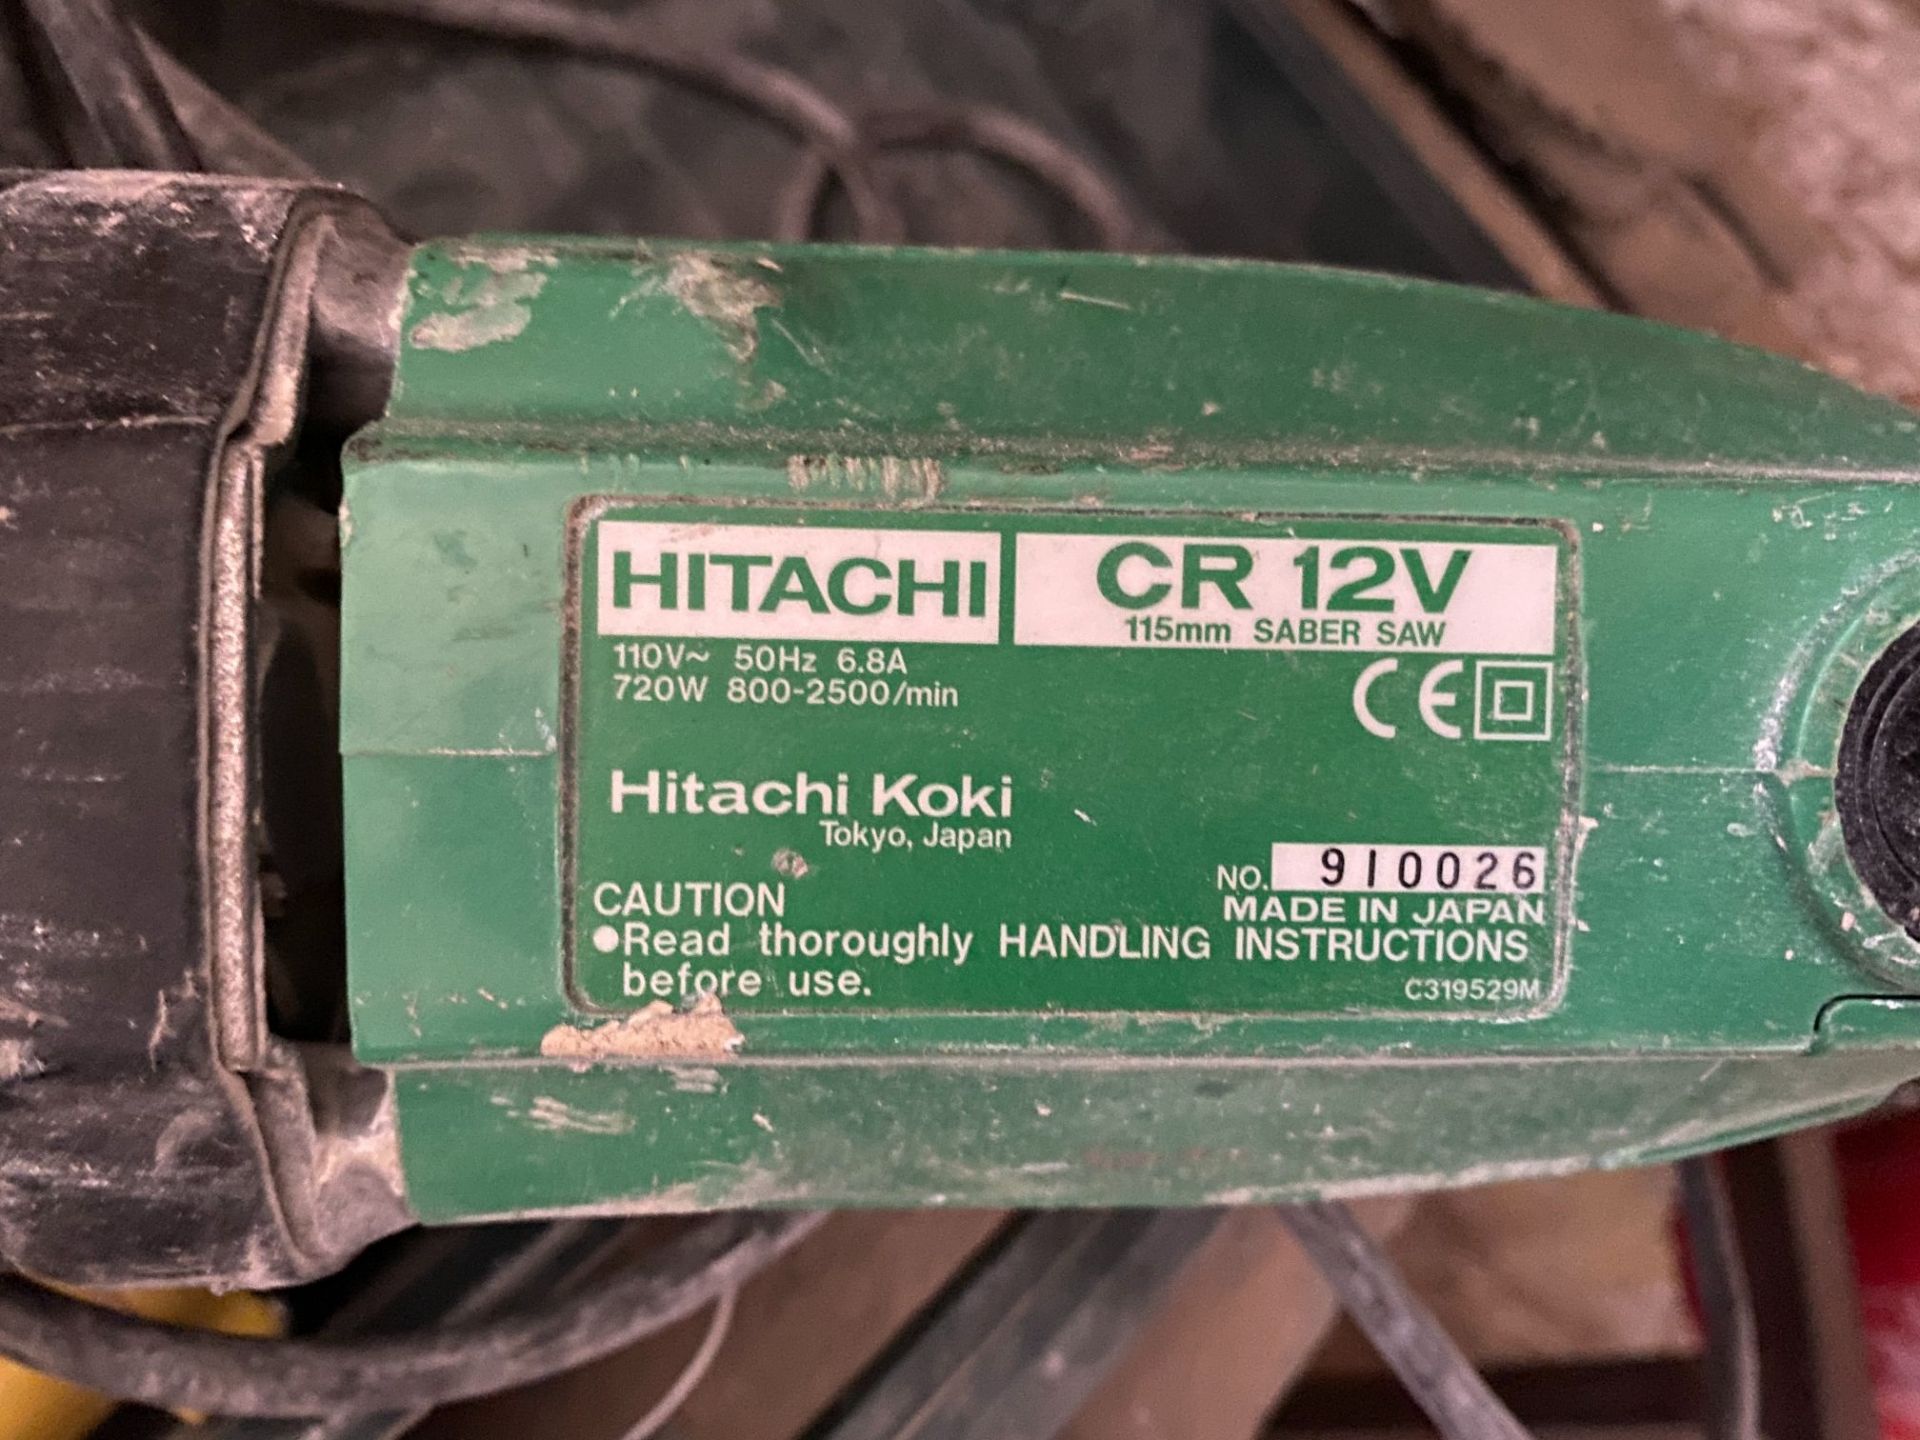 Hitachi CR 12V 115mm saber saw, serial no: 910026 (spares only) - Bild 2 aus 2